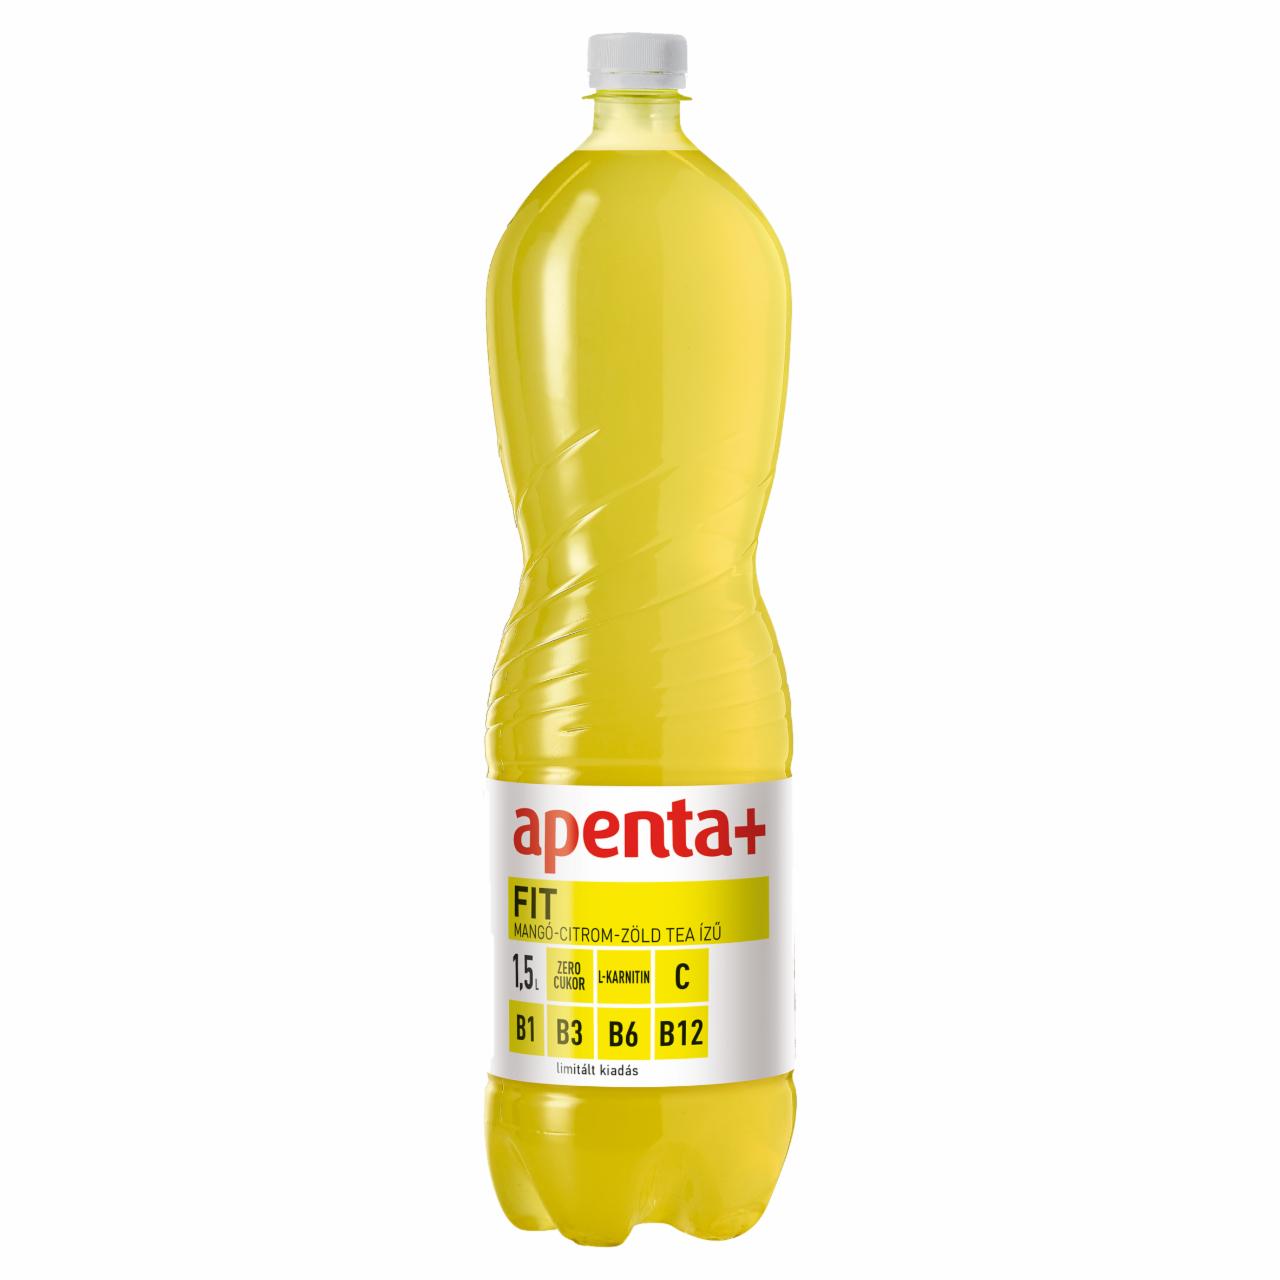 Képek - Apenta+ Fit mangó-citrom-zöld tea ízű szénsavmentes üdítőital vitaminokkal 1,5 l